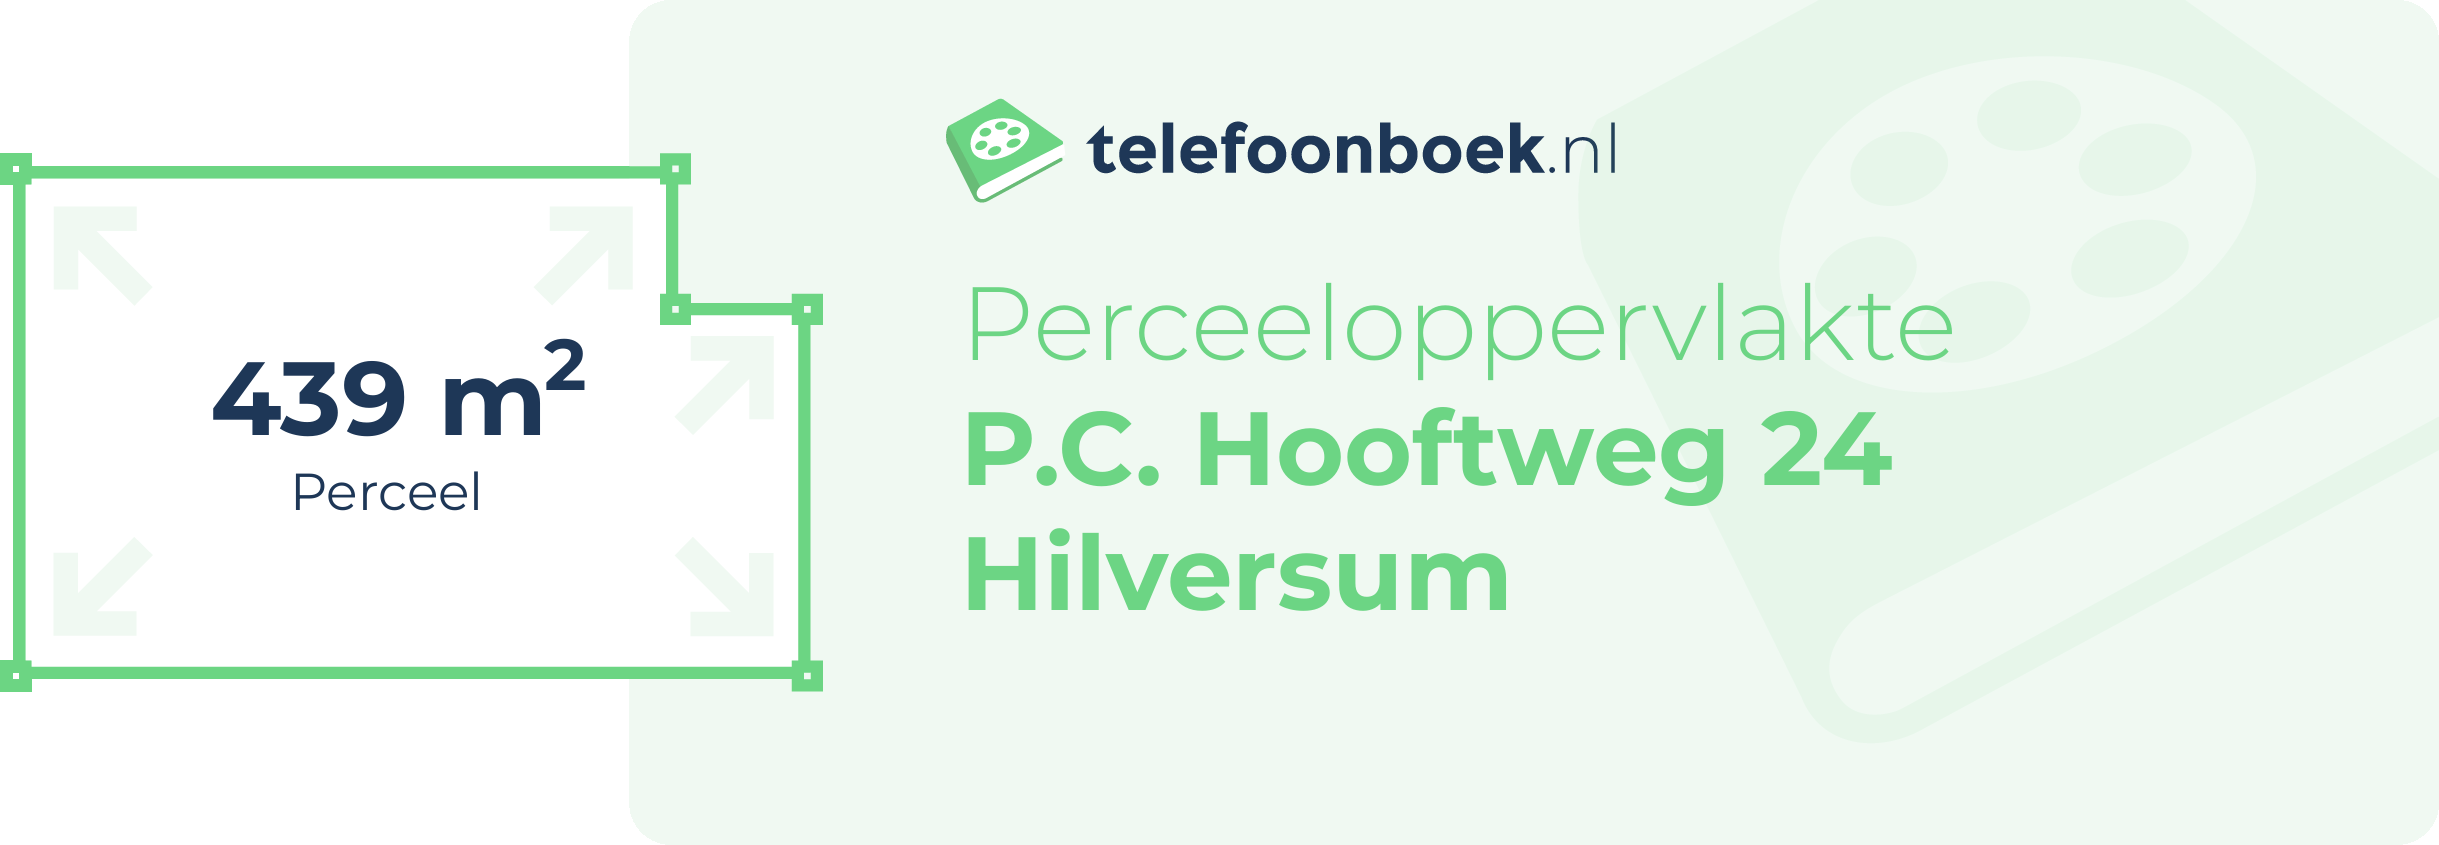 Perceeloppervlakte P.C. Hooftweg 24 Hilversum